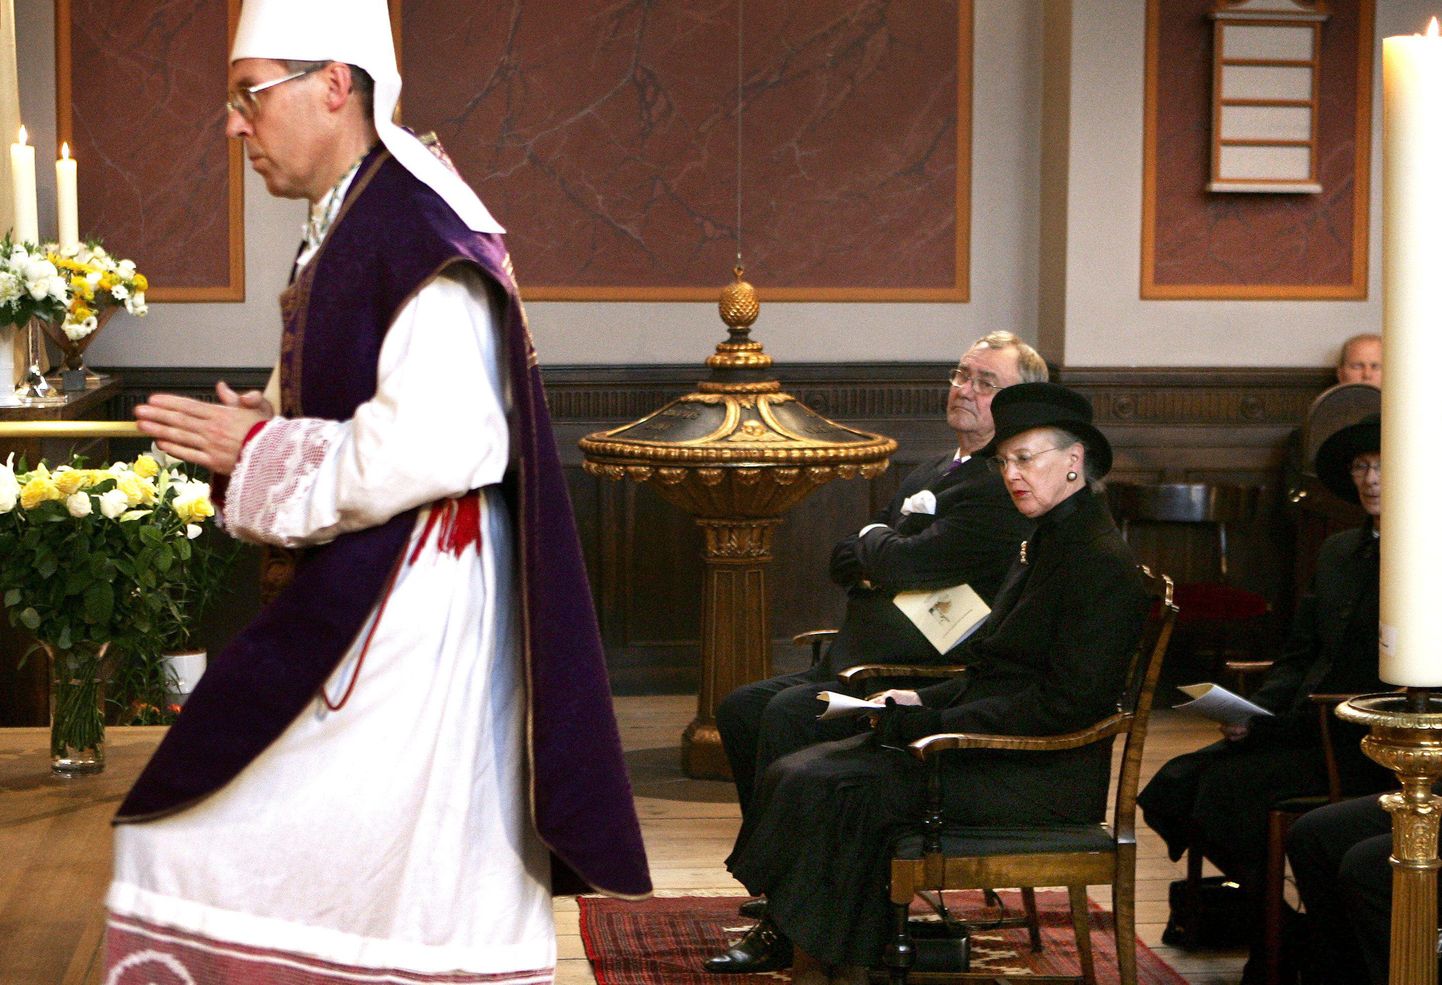 Taani kuninganna Margrethe II ja prints Henrik eelmise paavsti Johannes Paulus II mälestuseks Kopenhaagenis peetud missal.